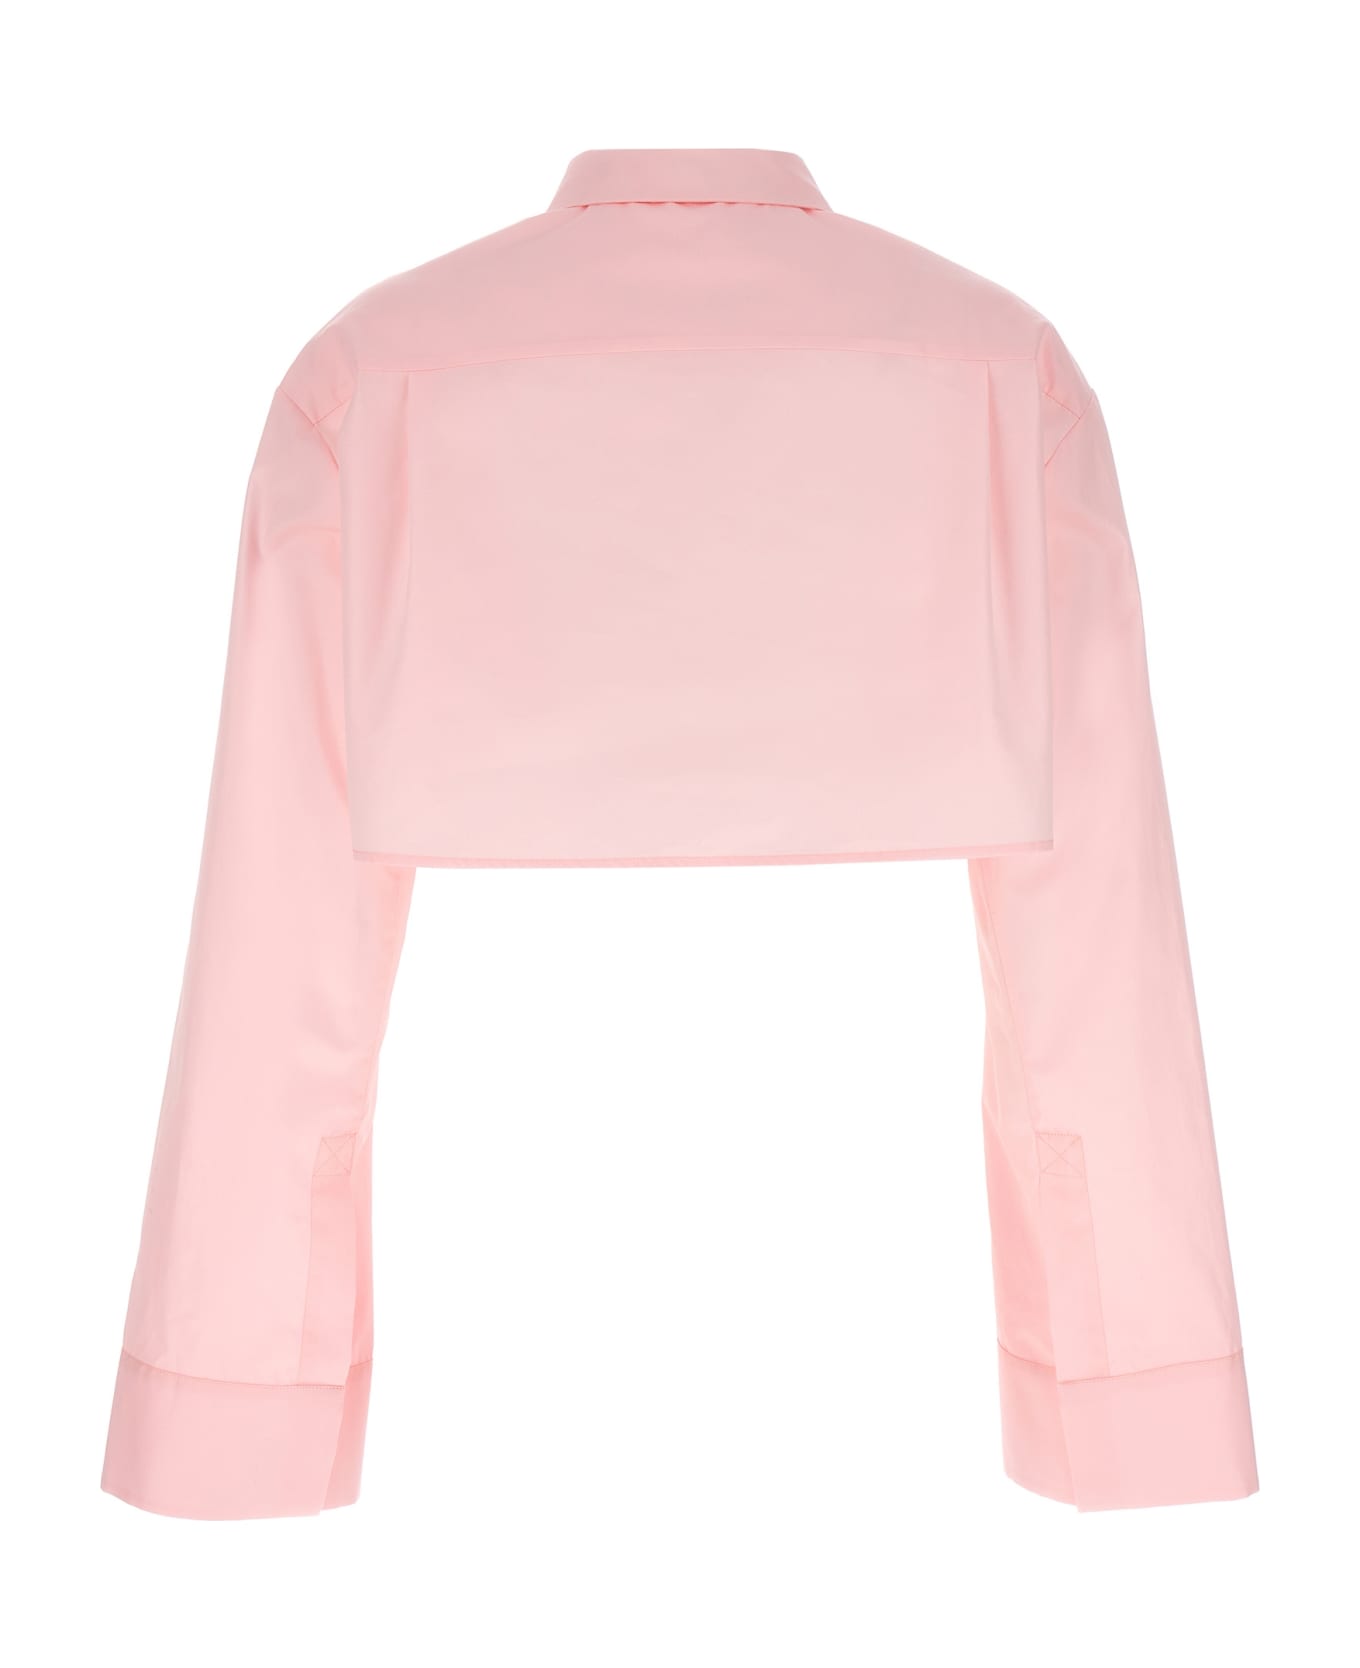 Loewe Cropped Cotton Shirt - Pink シャツ